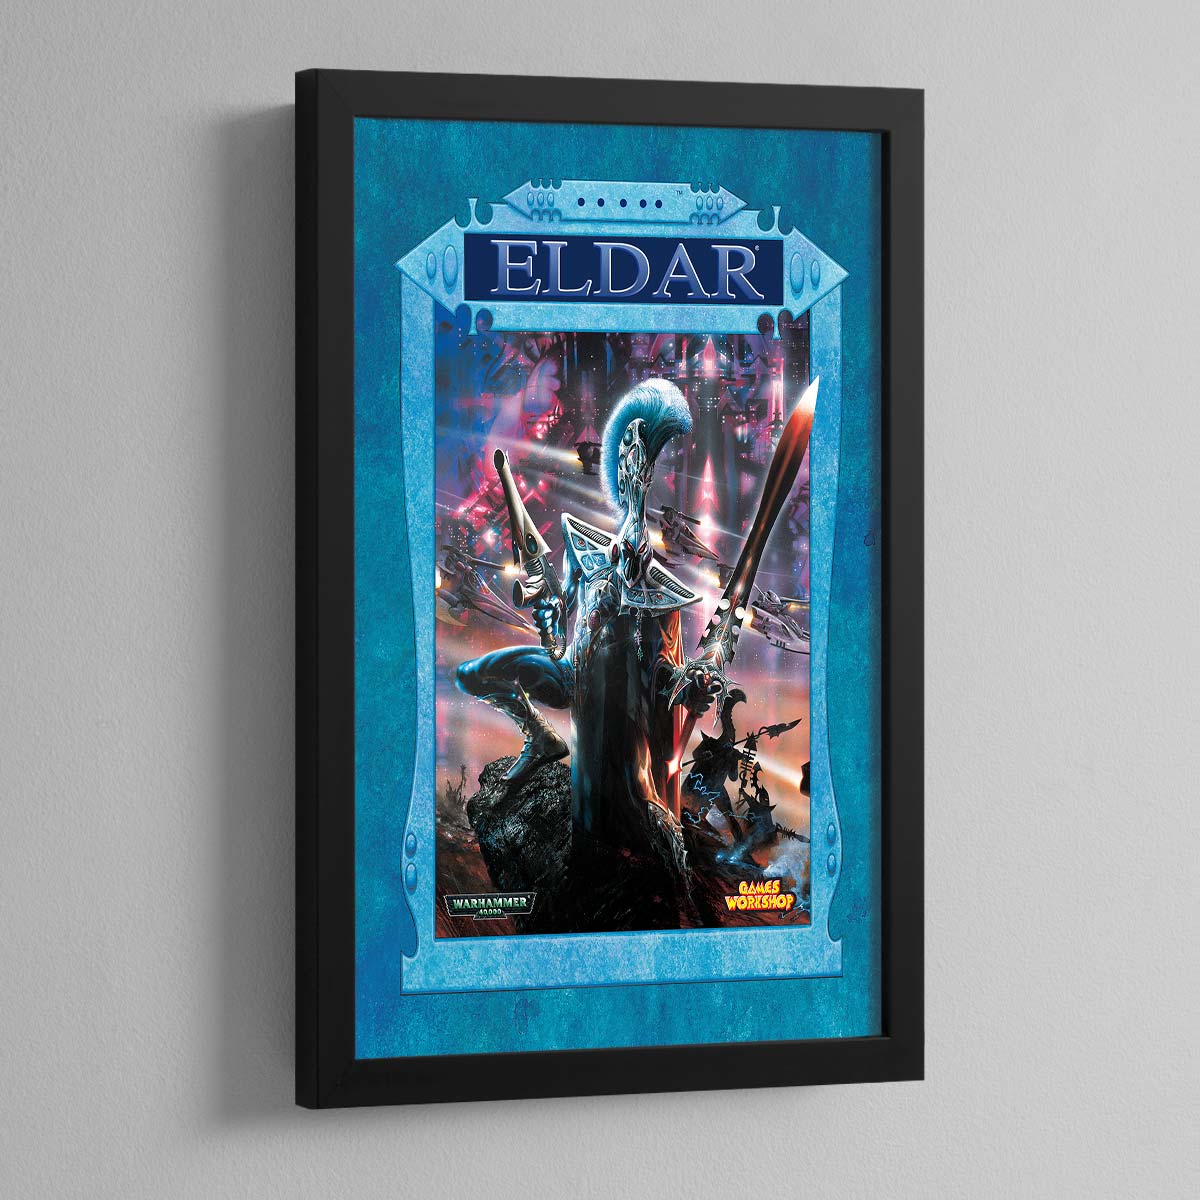 Warhammer 40,000 3rd Edition – Eldar – Frame